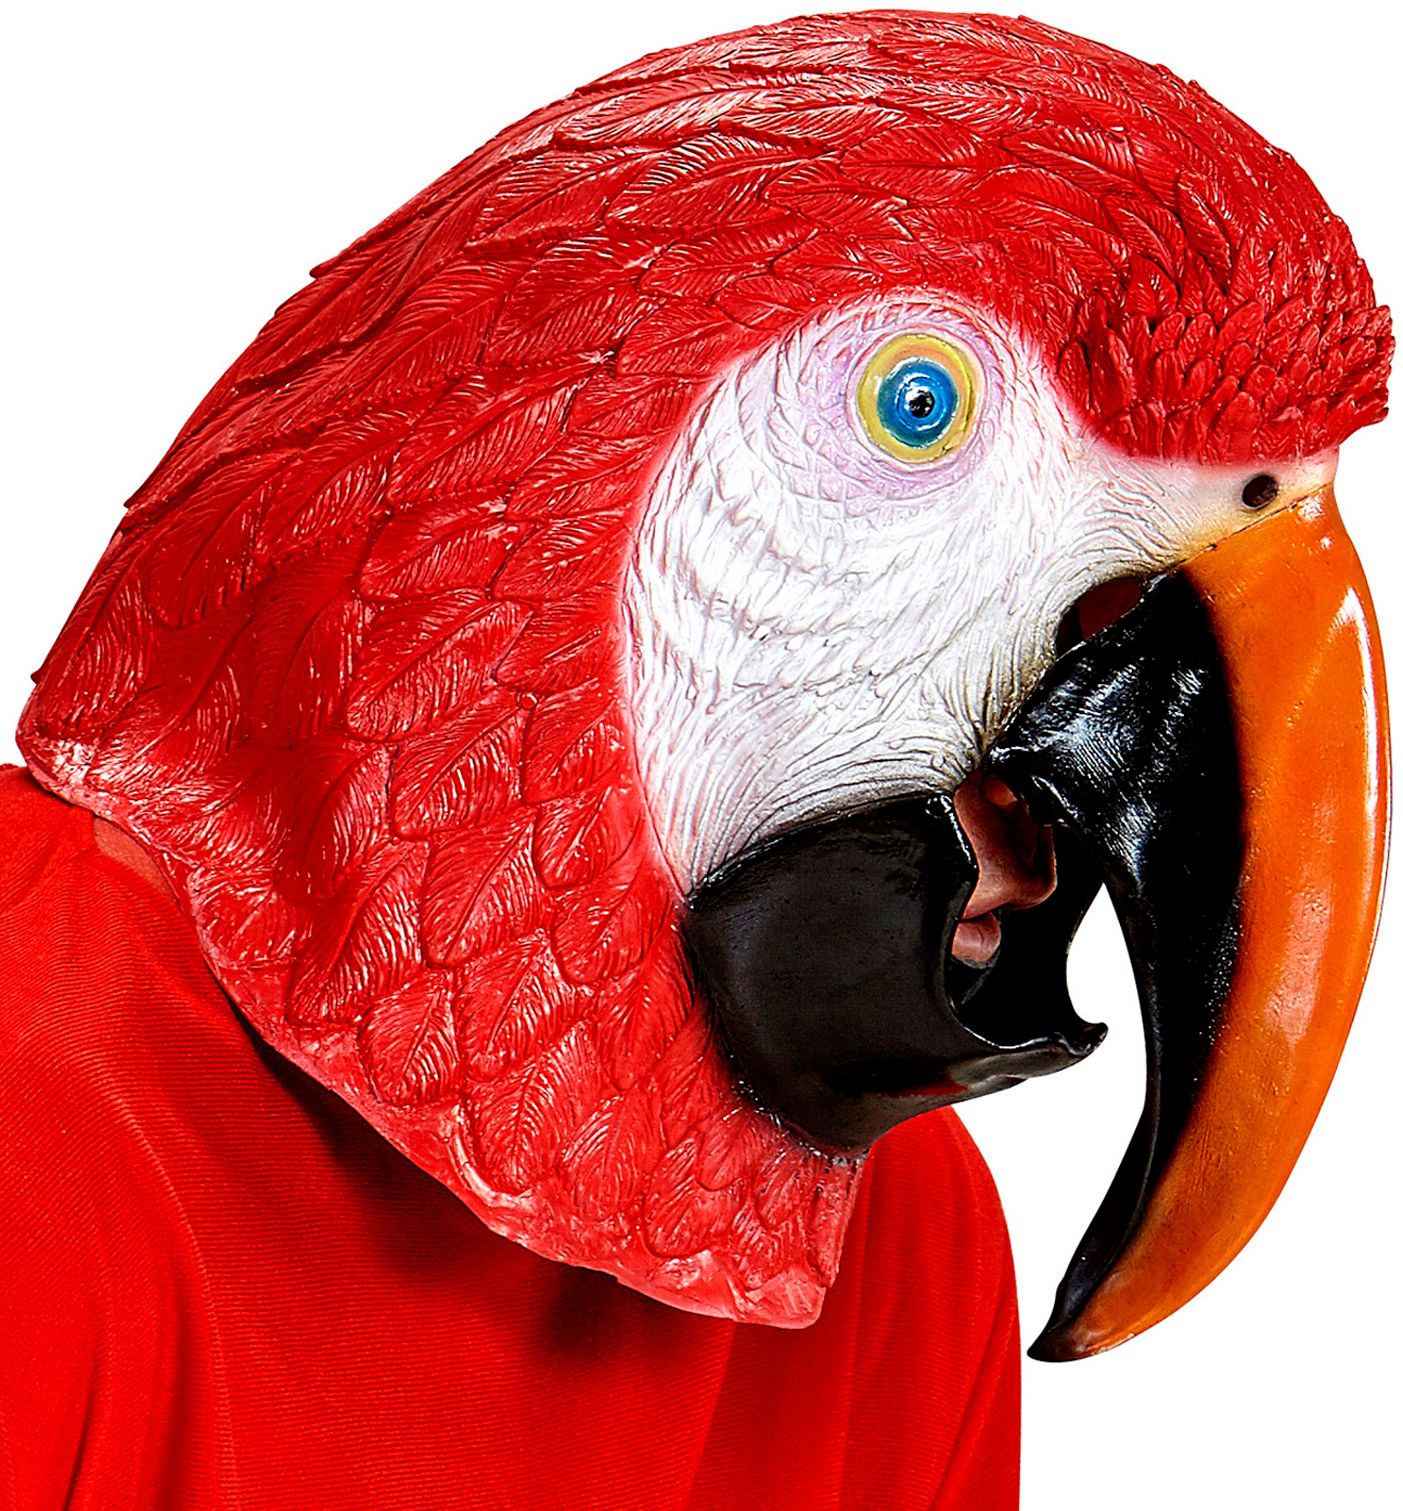 Papegaai masker